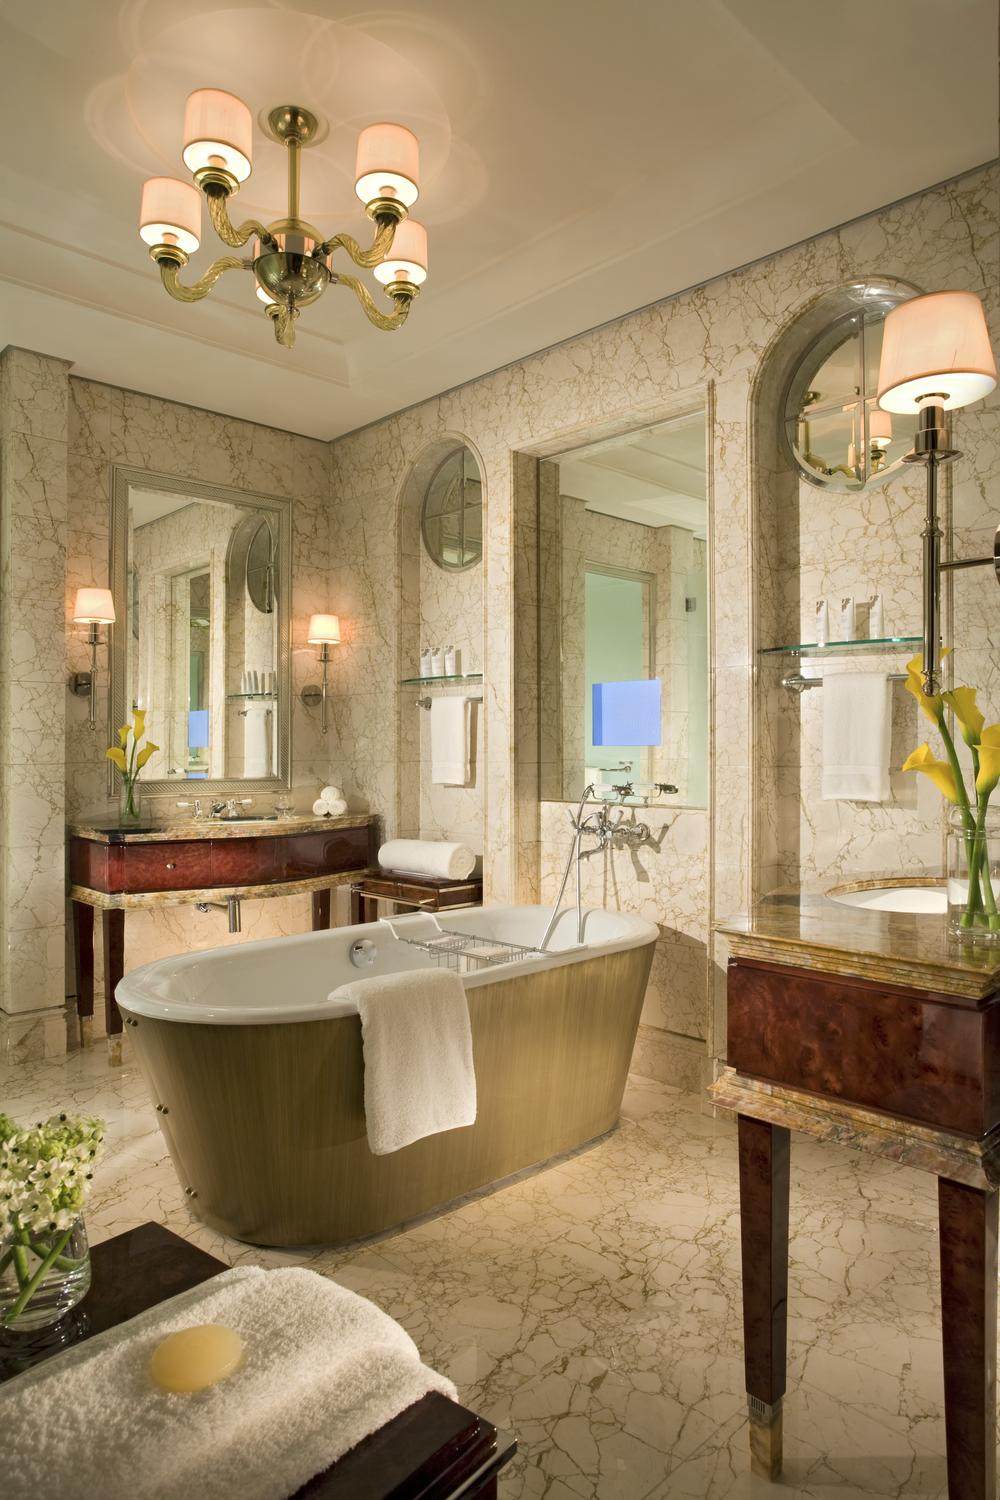 新加坡瑞吉酒店_The St. Regis Singapore—Excutive Deluxe Room - Marble Bathroom.jpg